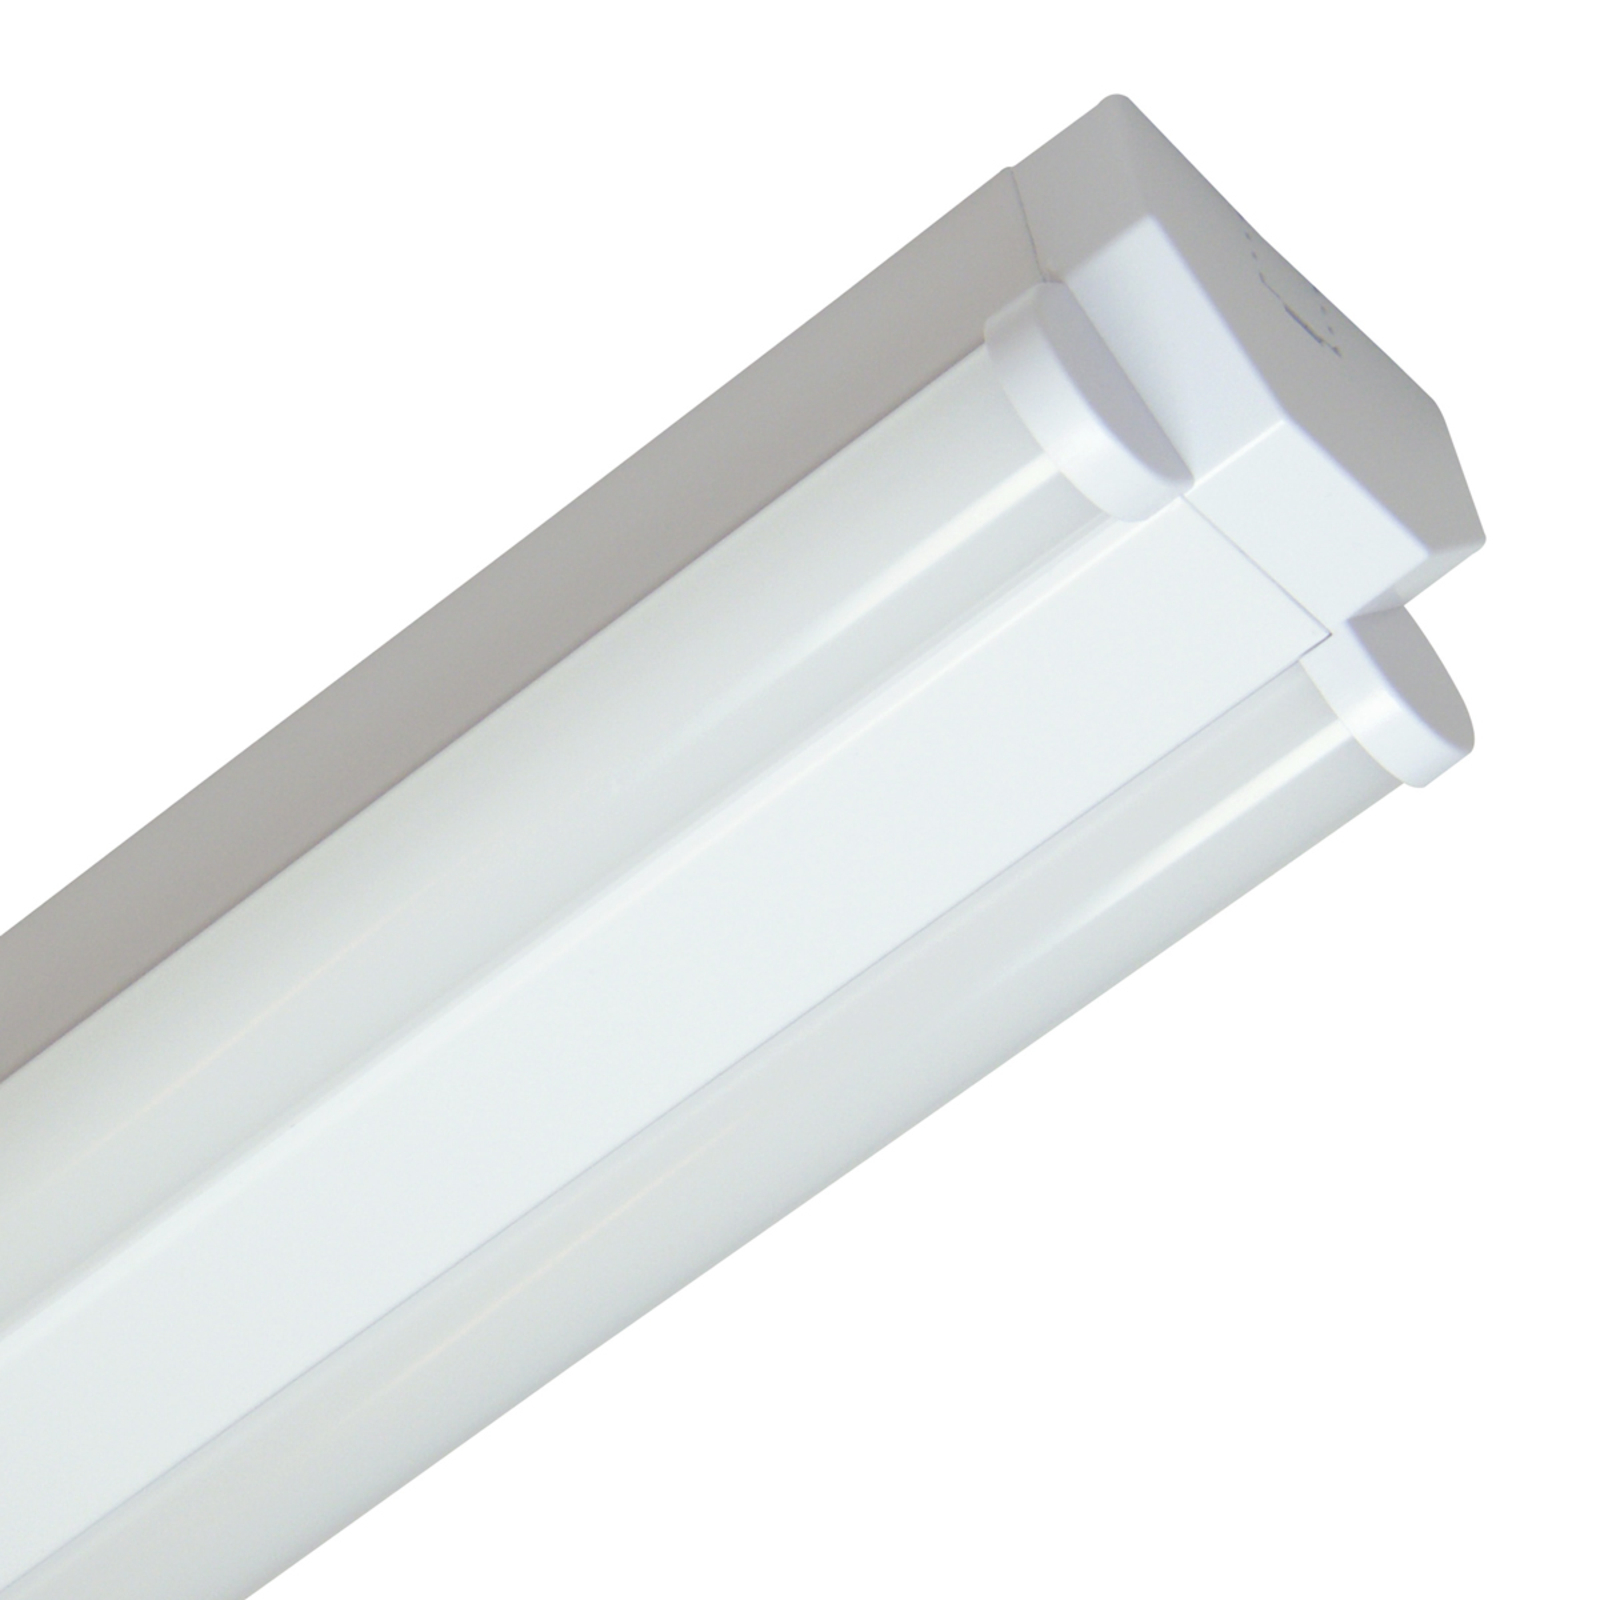 Basic 2 - dvojsvetelné stropné svietidlo LED 120 cm